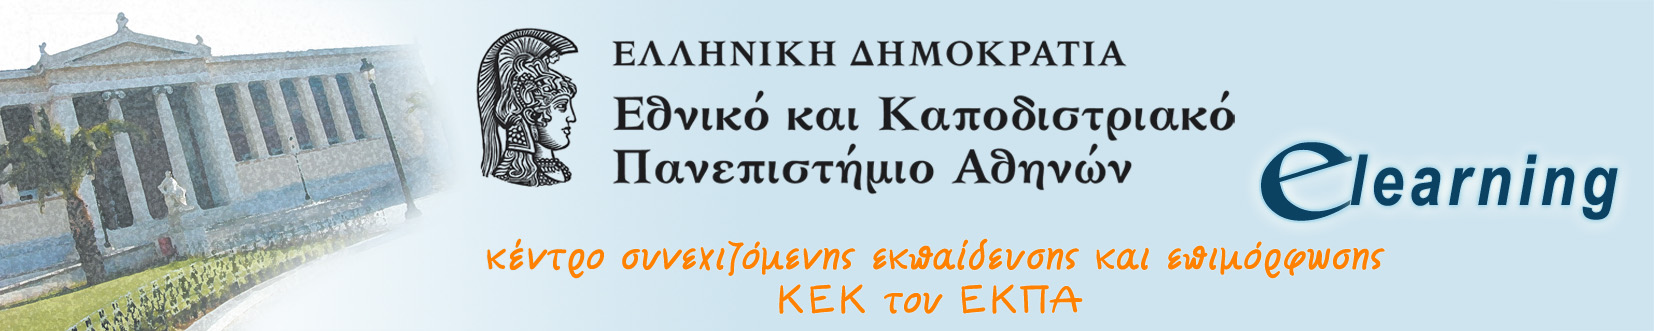 Ξεκίνησε η υποβολή αιτήσεων για το χειμερινό κύκλο προγραμμάτων από το E-Learning του Πανεπιστημίου Αθηνών